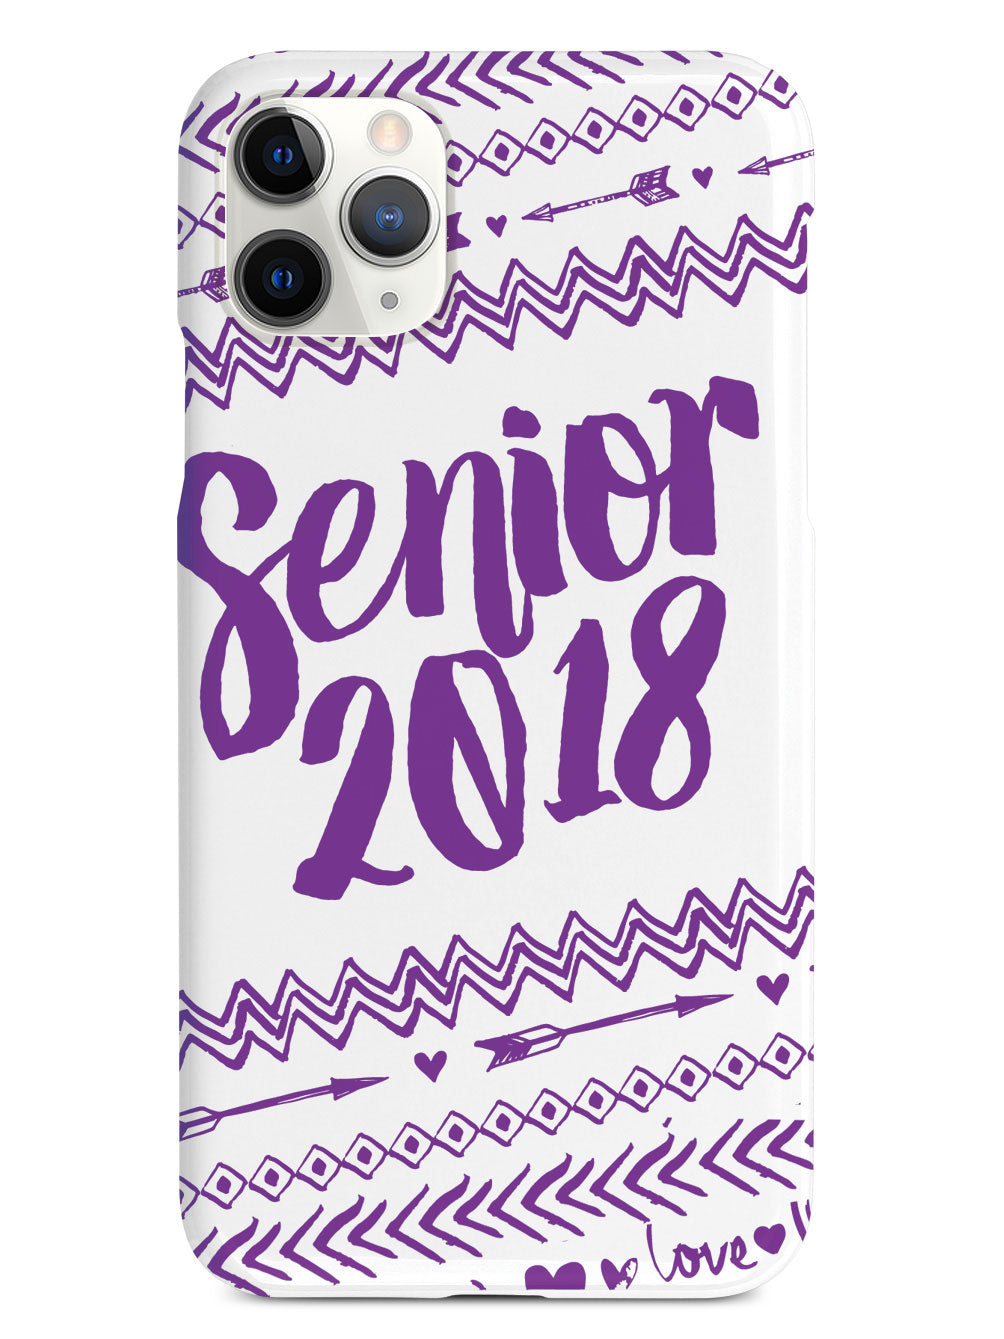 Senior 2018 - Purple Case